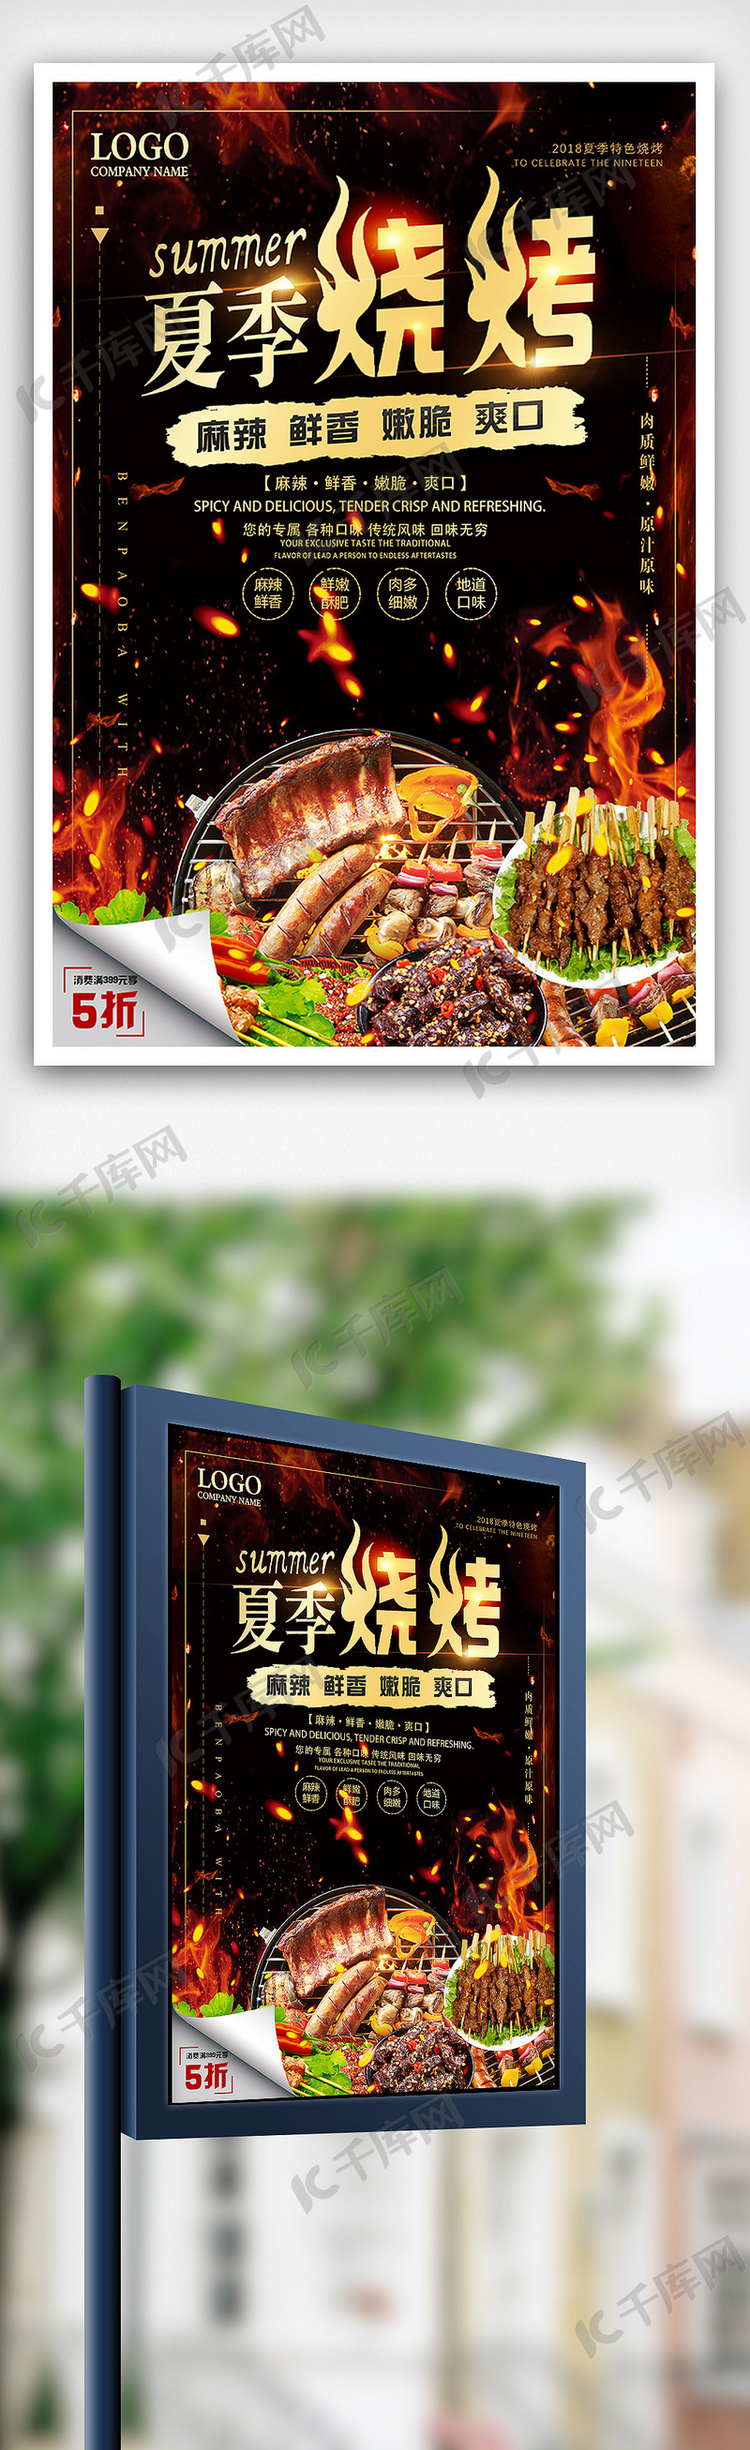 夏季烧烤美食餐饮海报设计模板